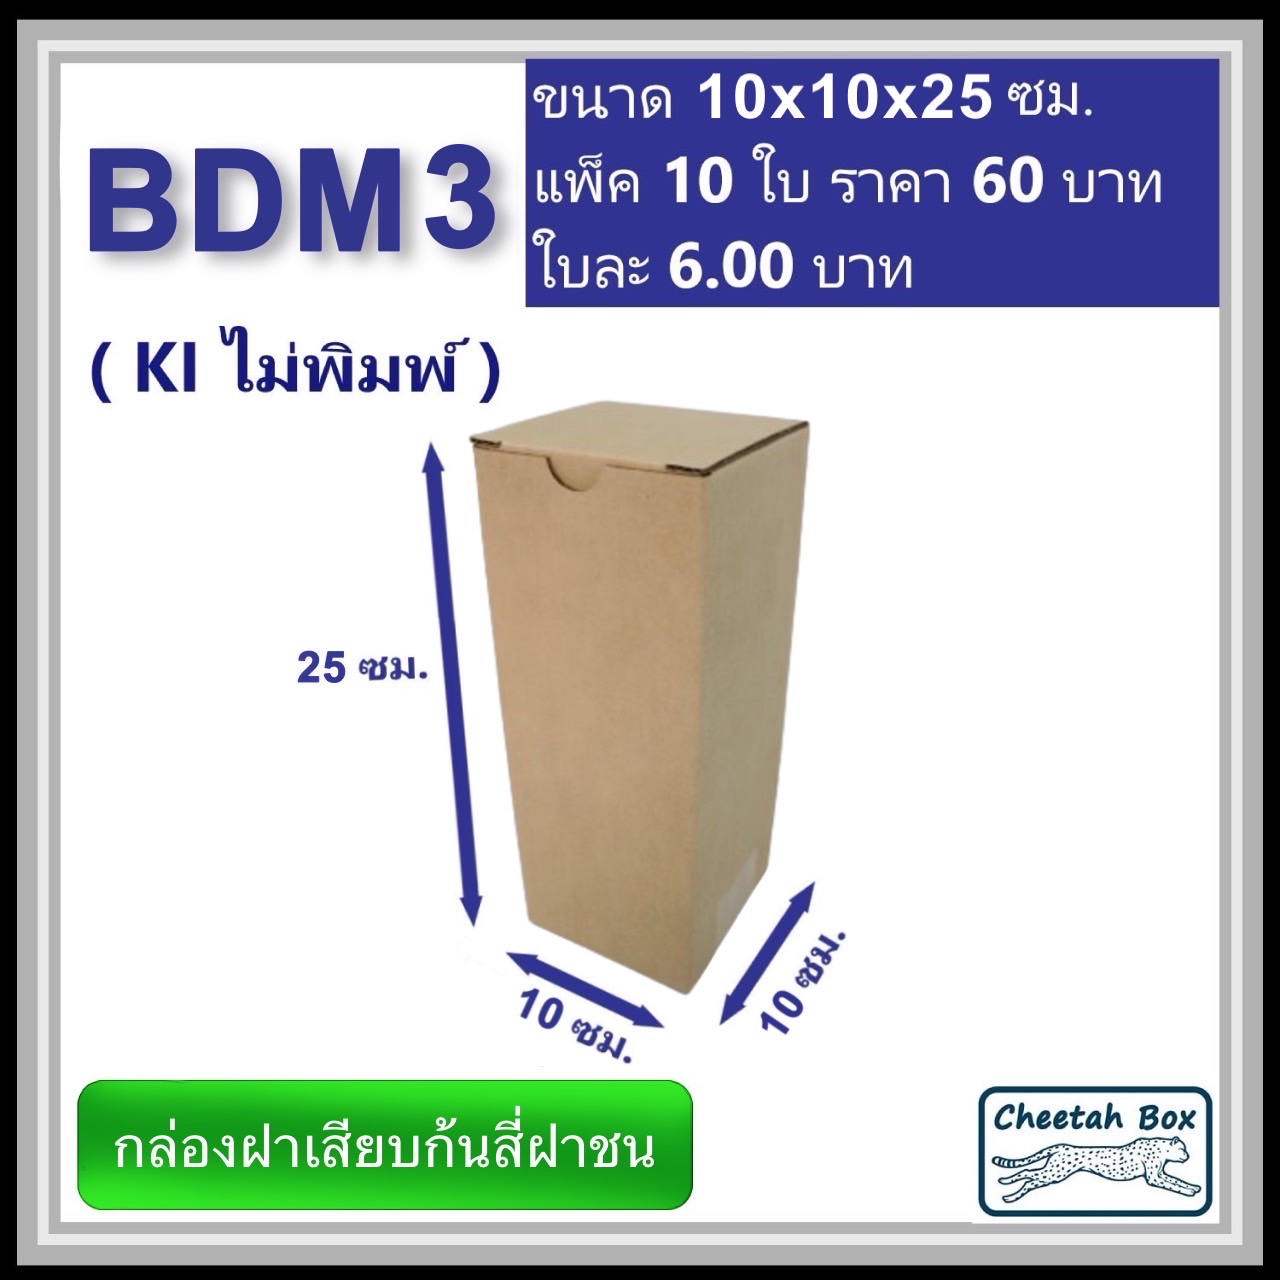 กล่องไดคัททรงสูง ฝาขัดก้นสี่ฝาชน BDM3 ไม่พิมพ์ (Die-cut Box) ขนาด 10W x 10L x 25 cm.